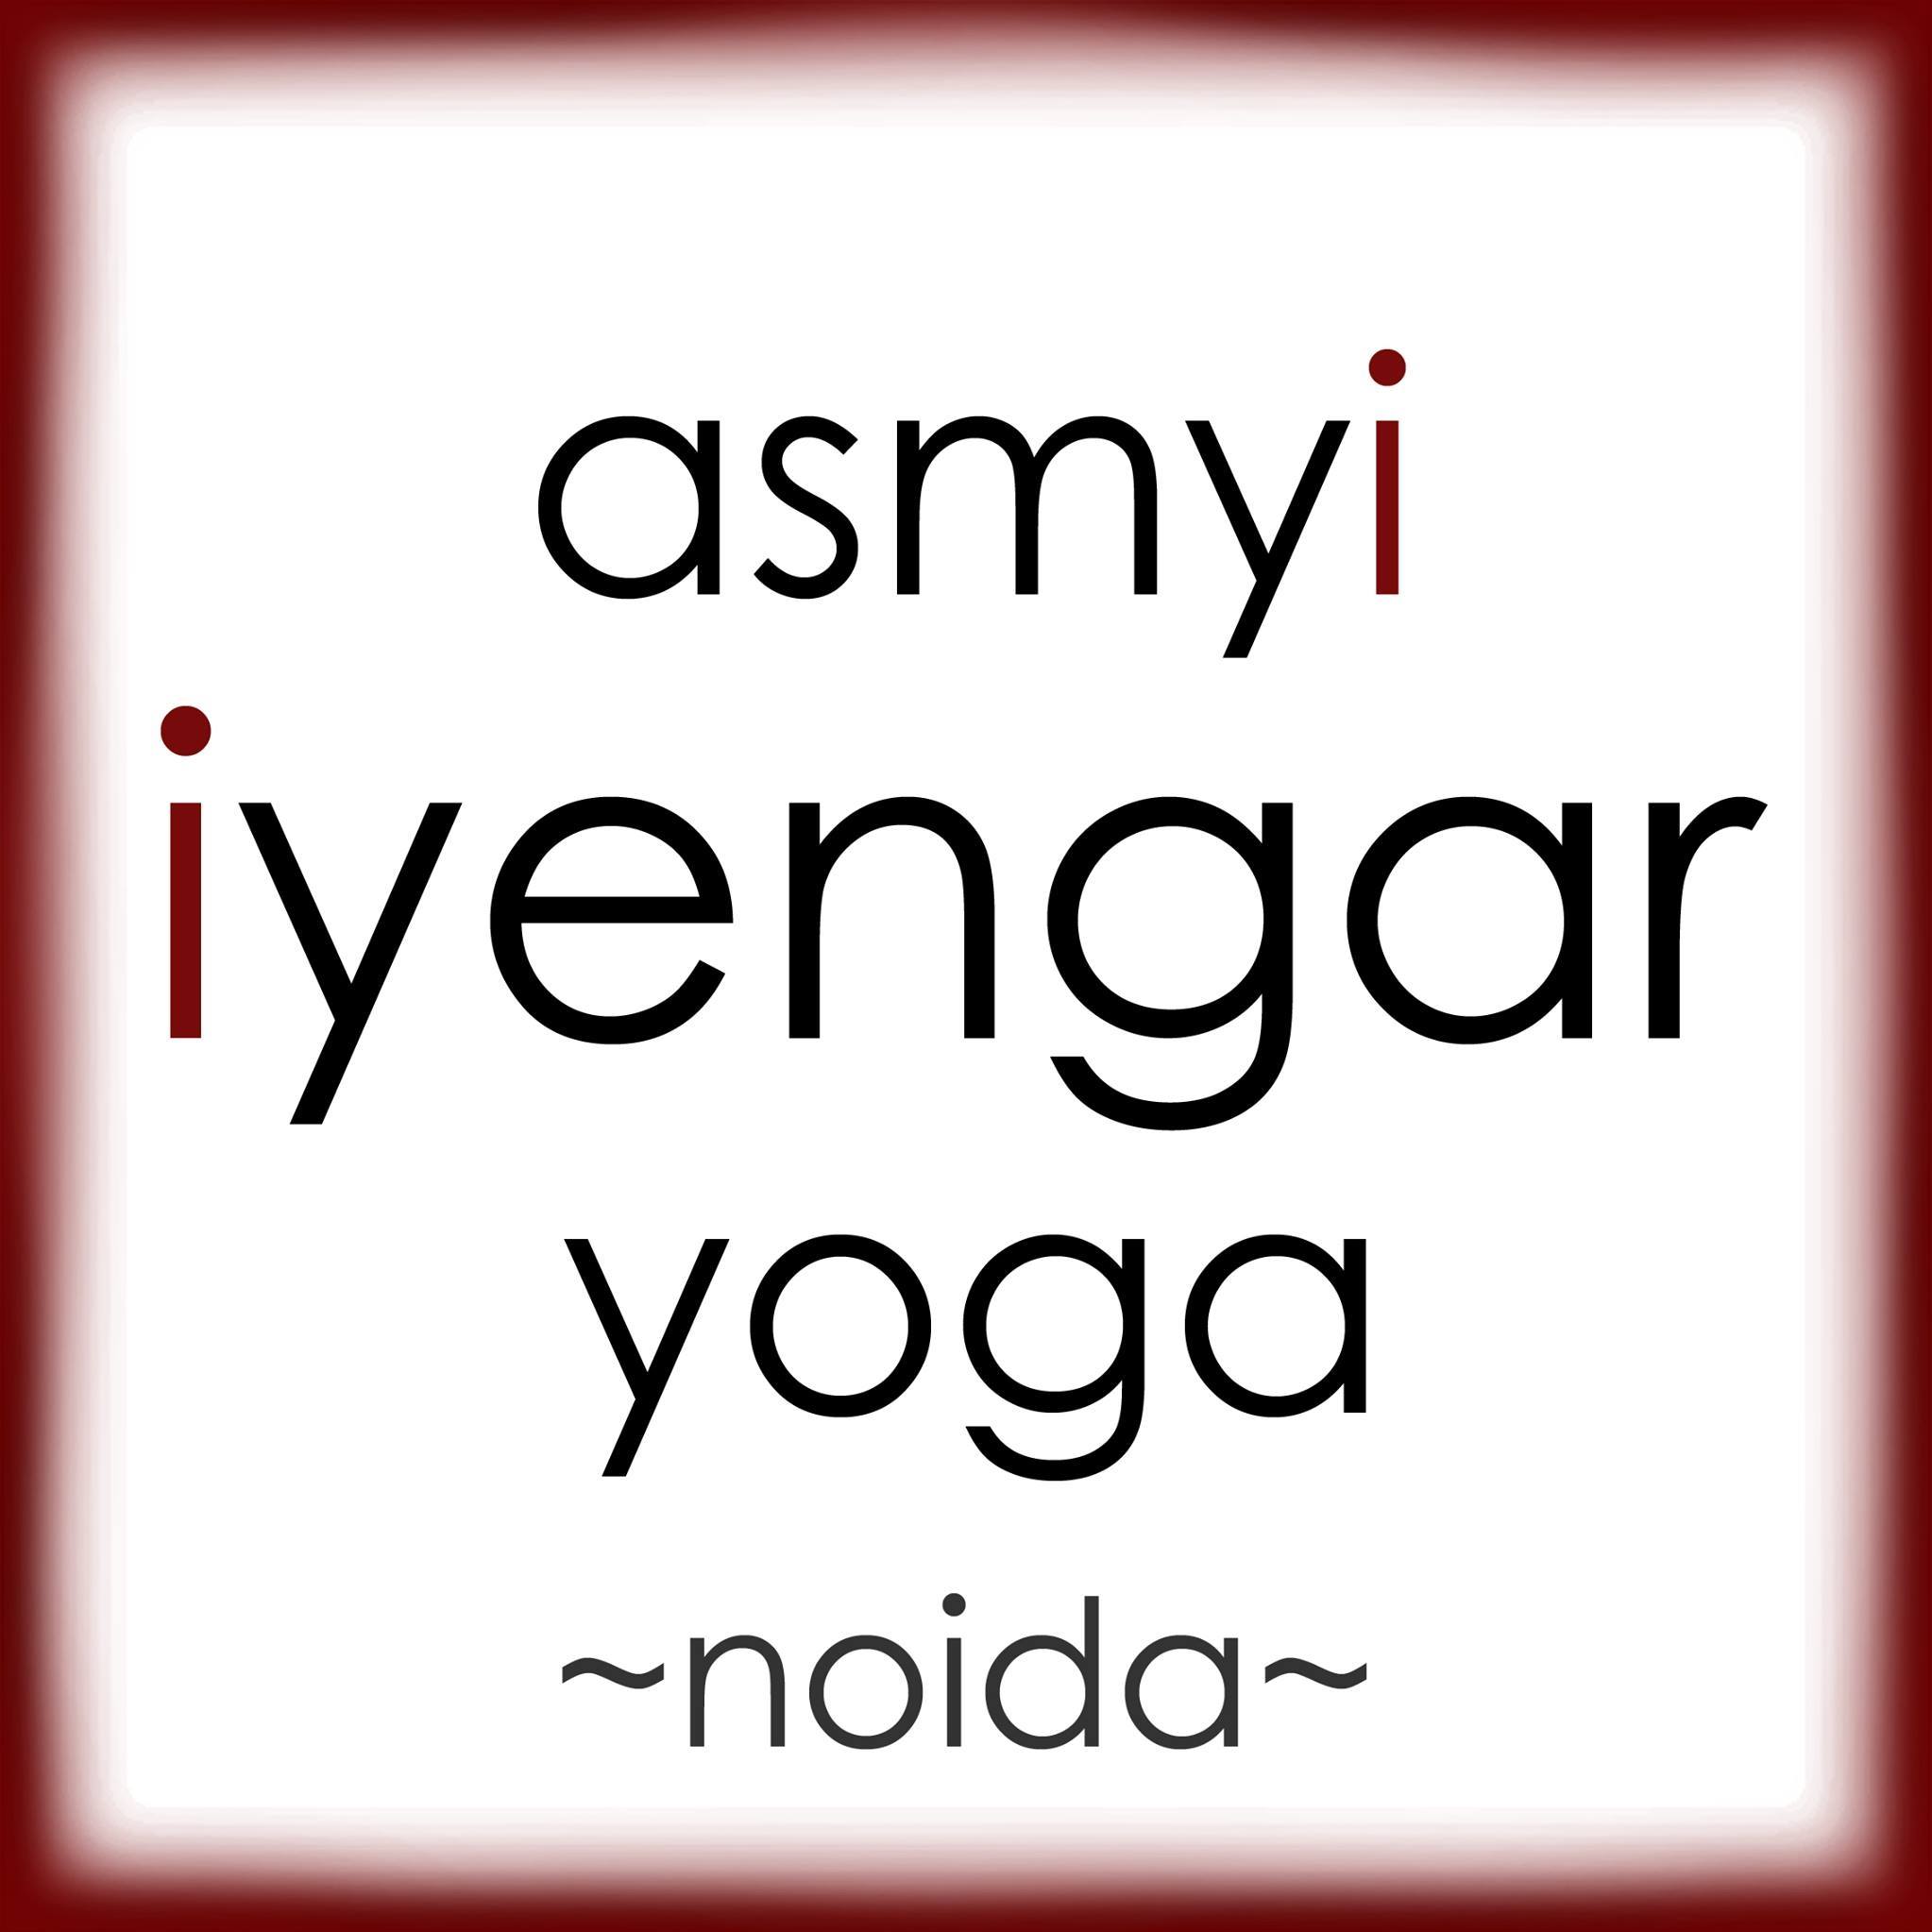 ASMYI Iyengar Yoga Noida 